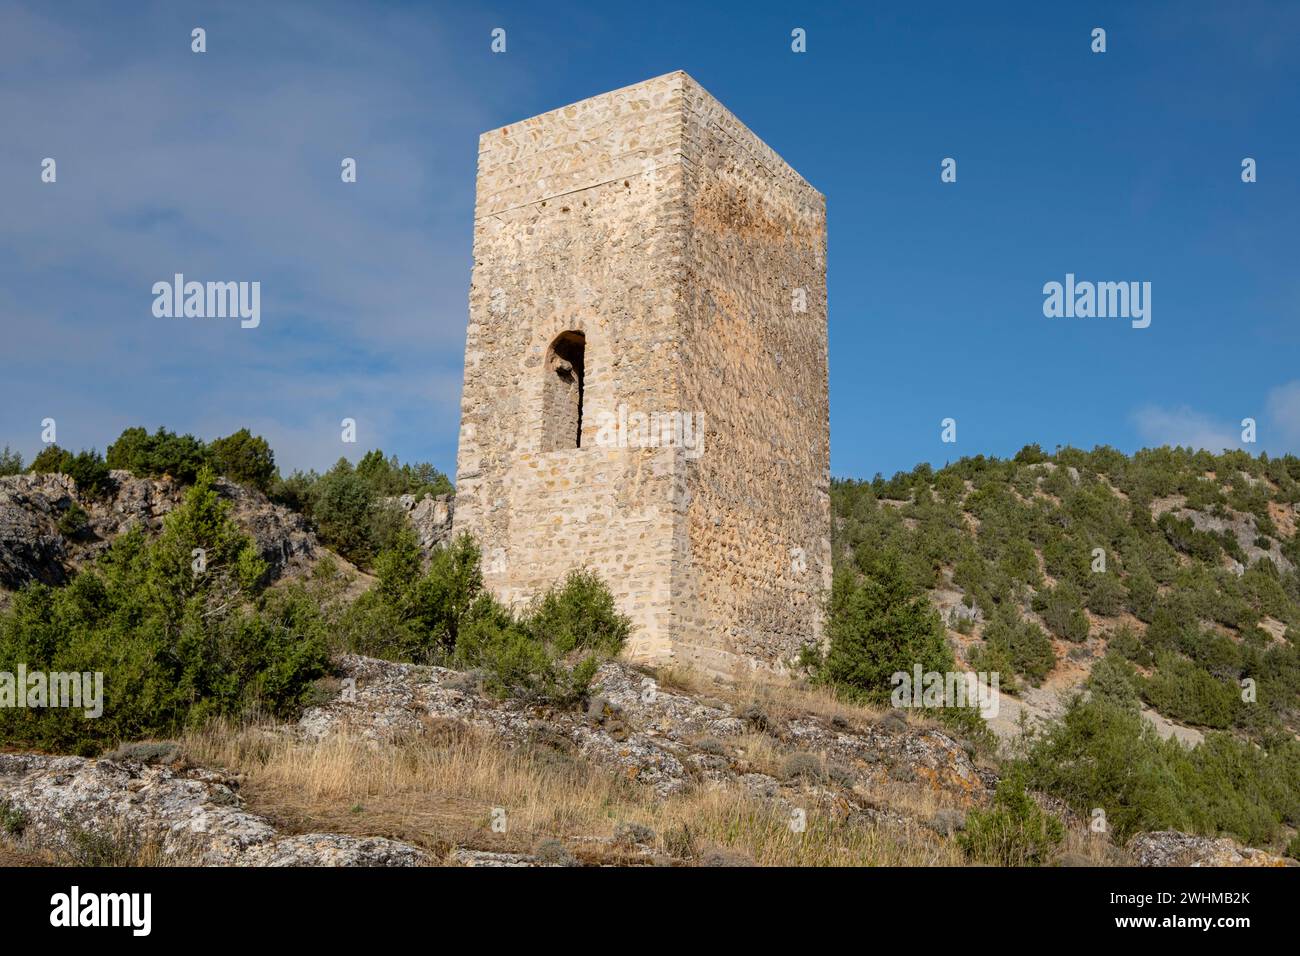 Tower of Islamic origin Stock Photo